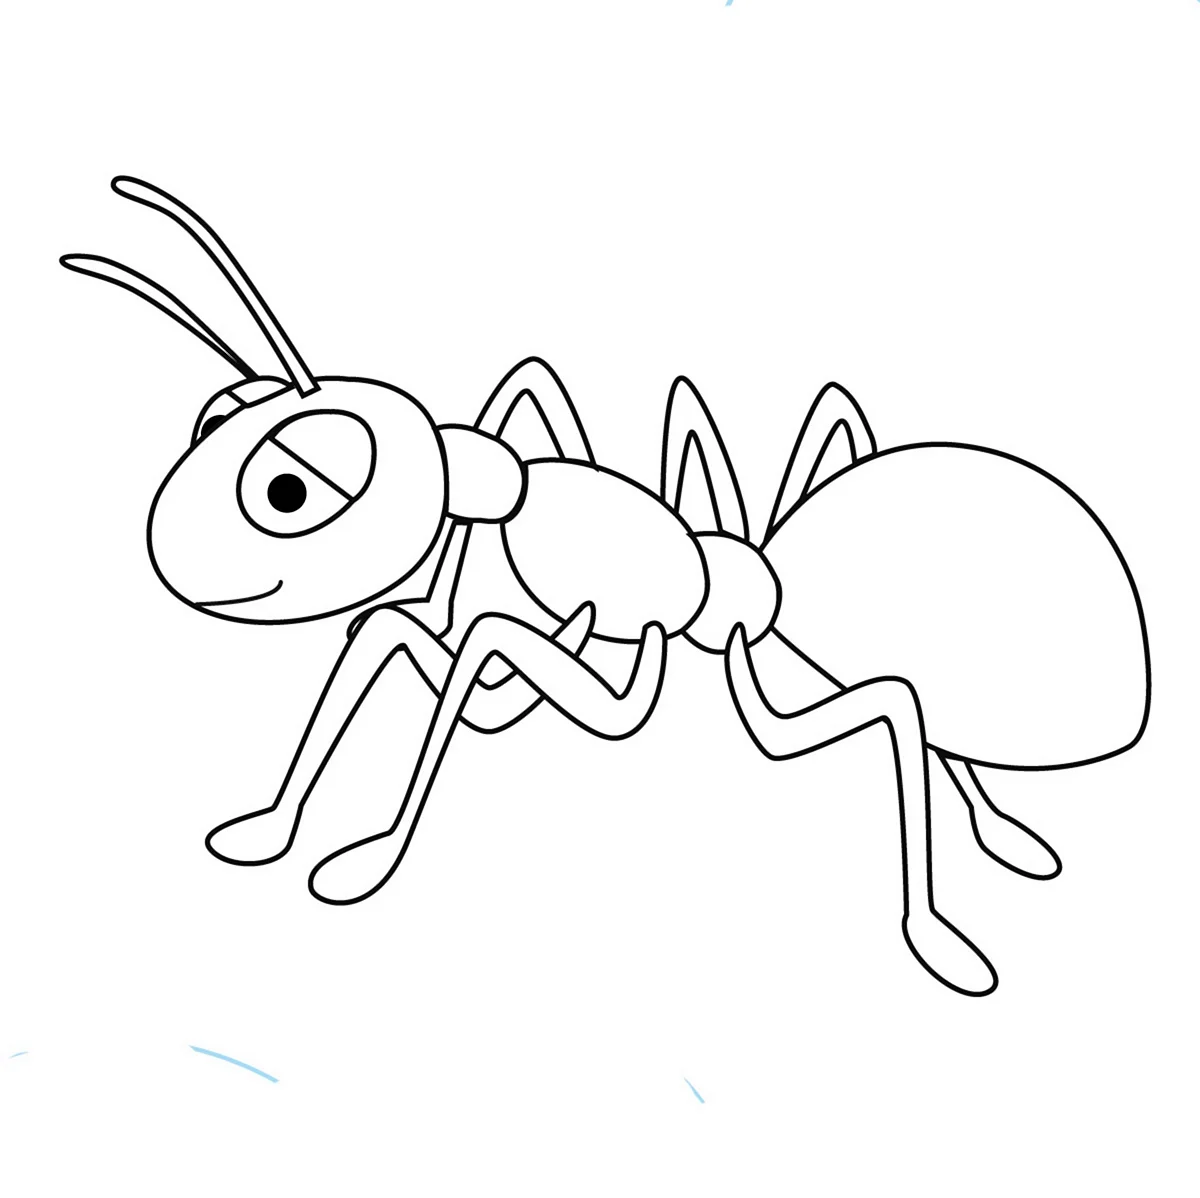 Насекомые муравей раскраска для детей 6-7 лет. Для срисовки